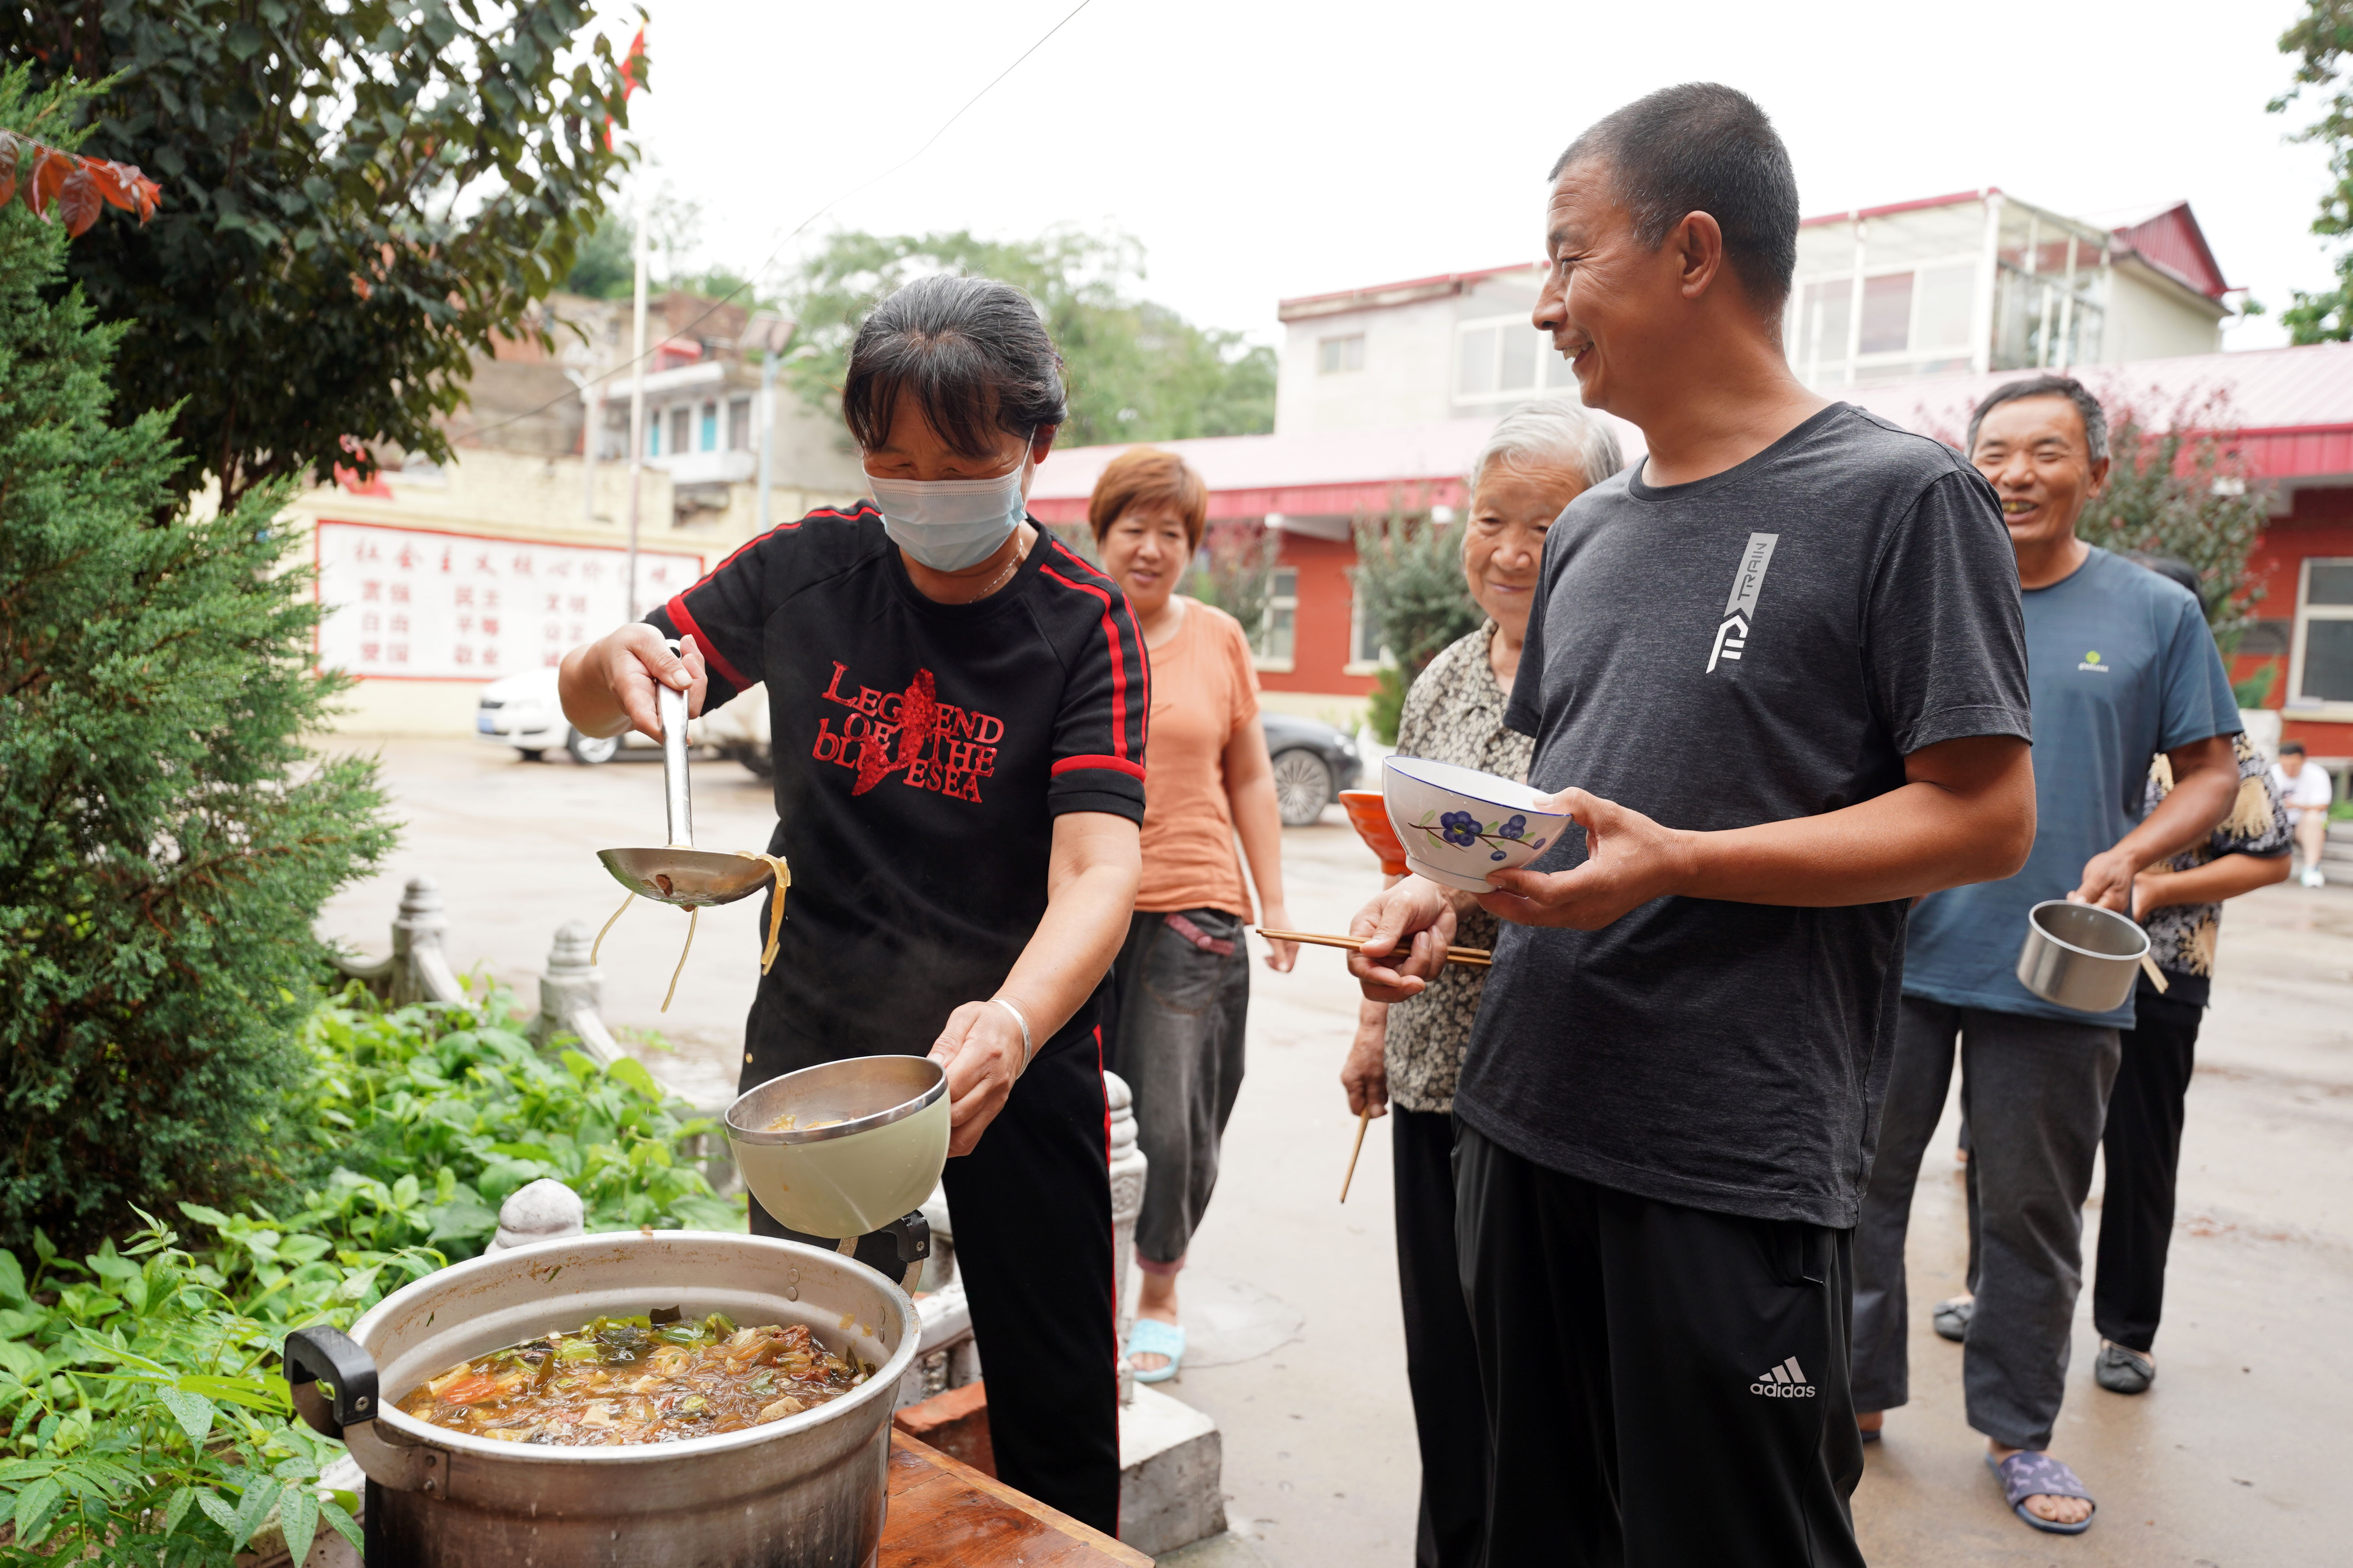 7月19日,村民在沙河市刘石岗乡渡口村一处临时安置点内打饭